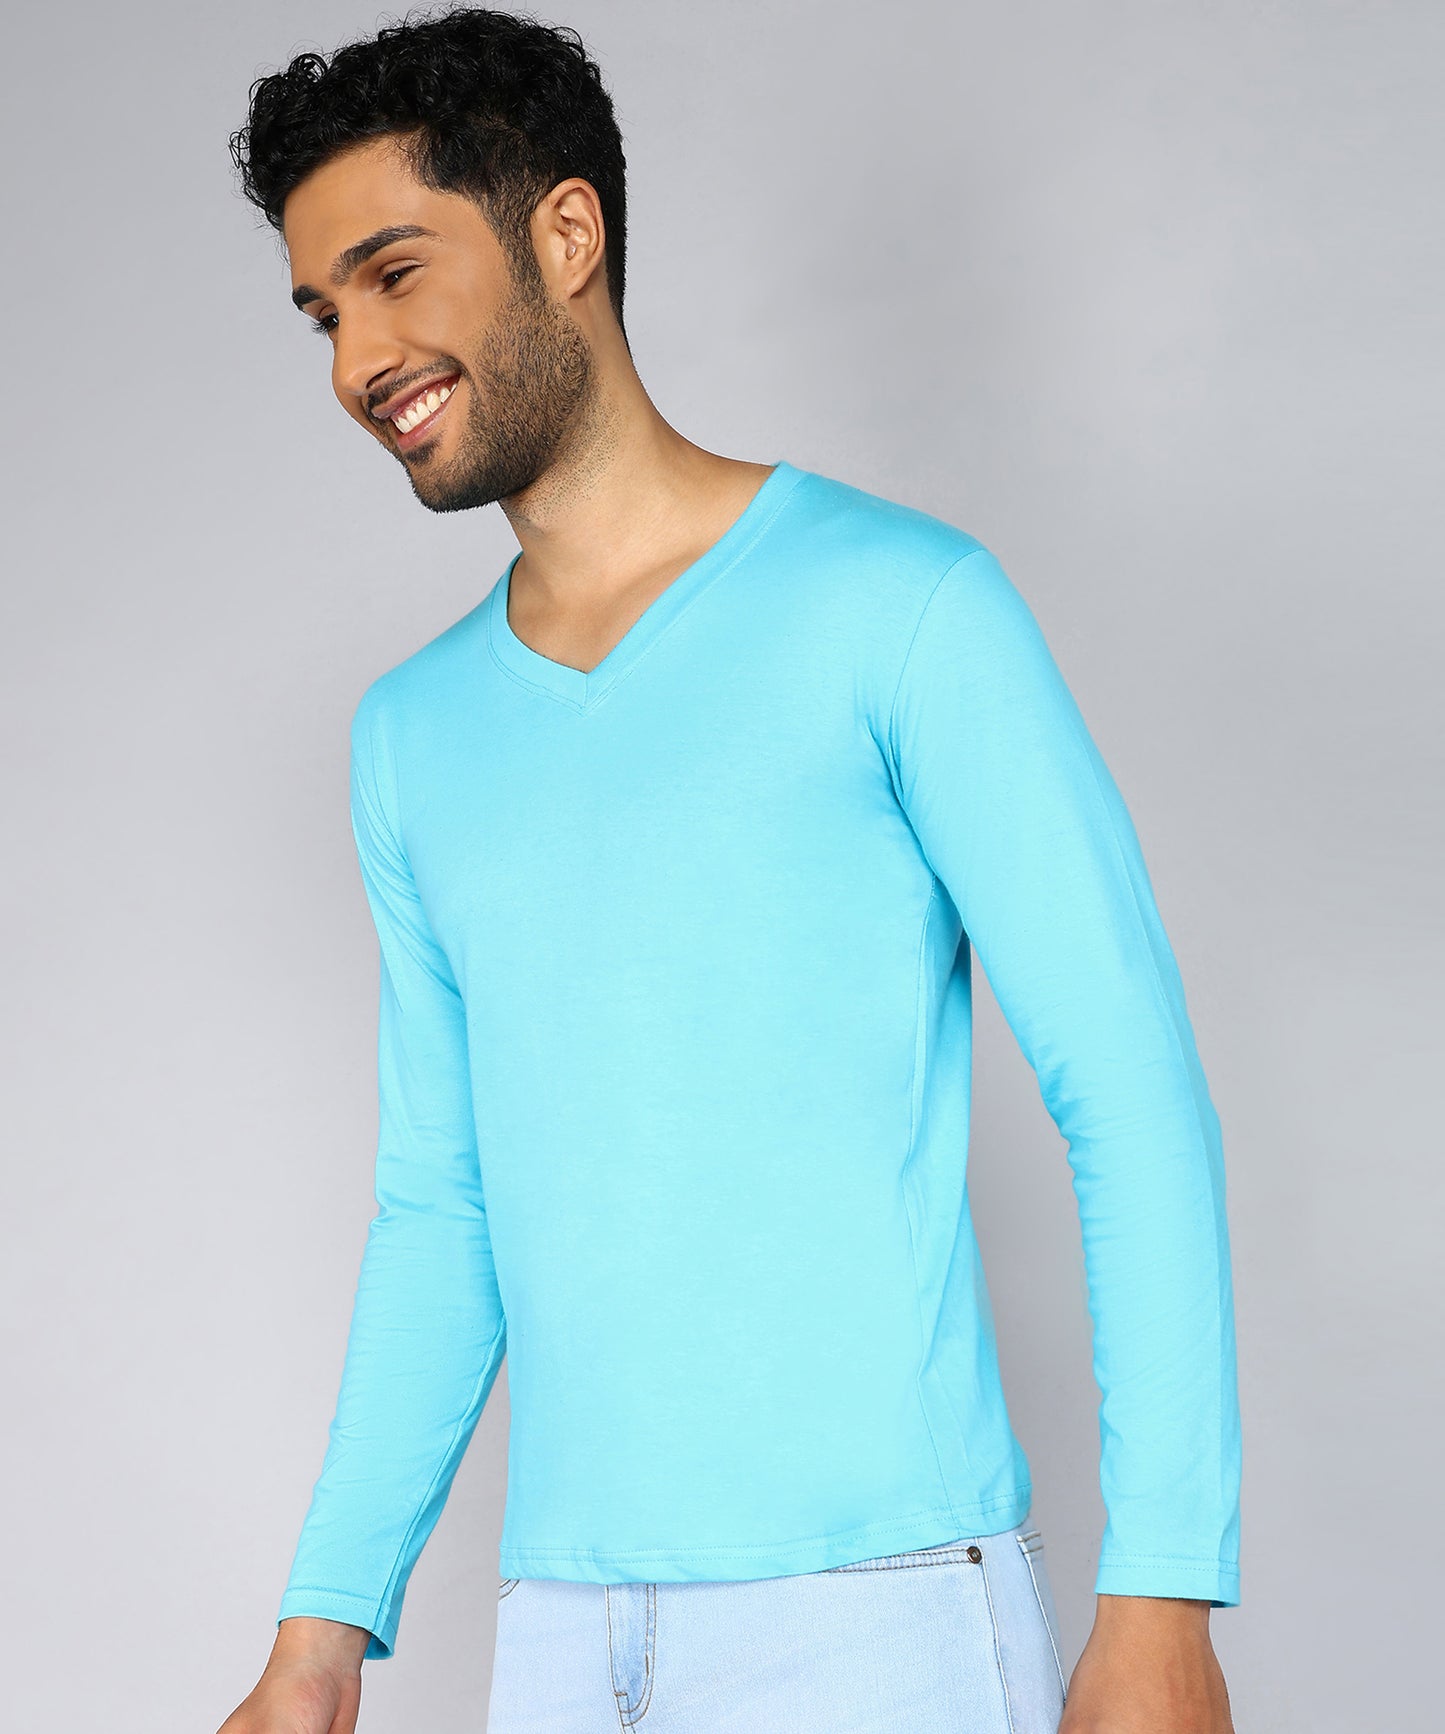 Men's Cotton Plain V Neck Full Sleeve T-Shirt